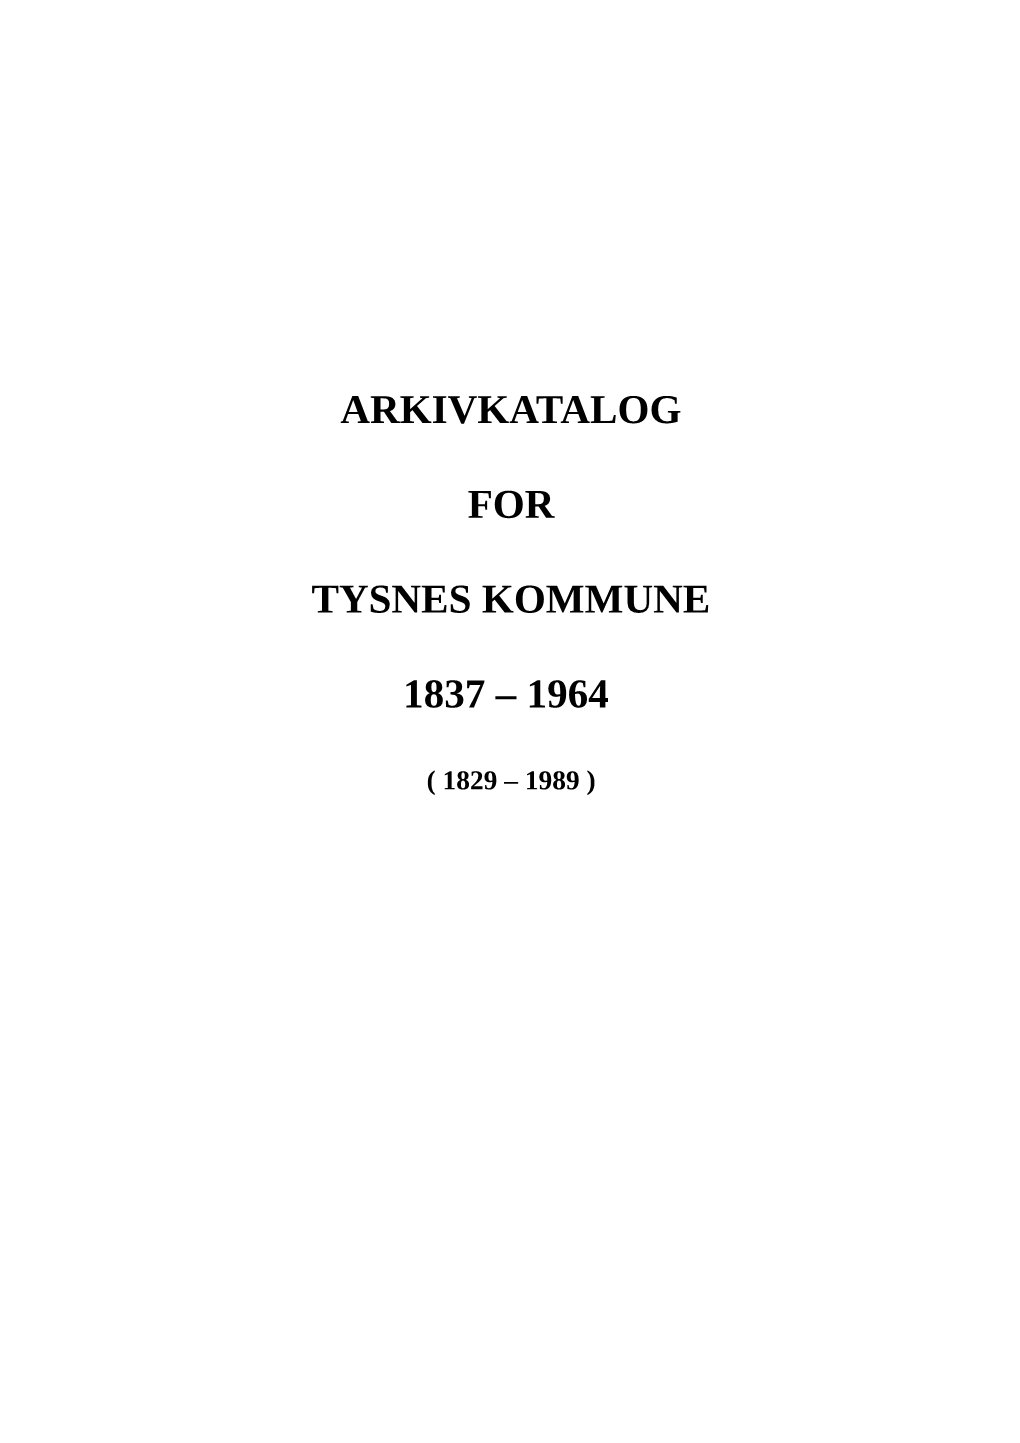 Arkivkatalog for Tysnes Kommune 1837 – 1964